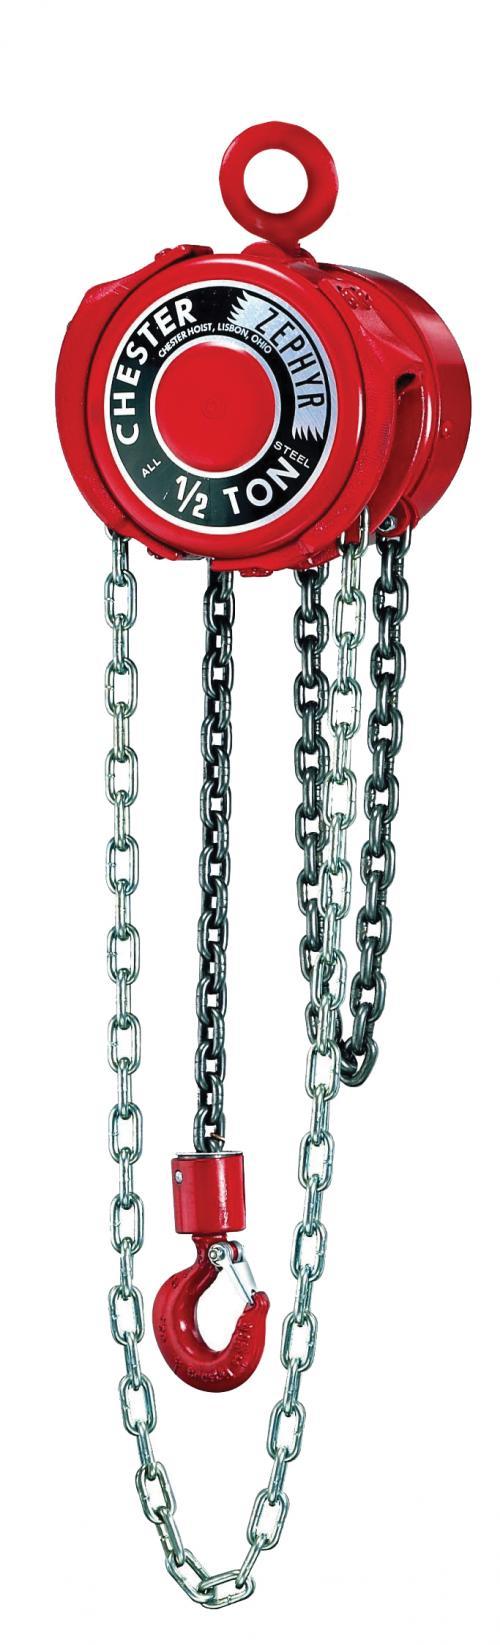 4 Ton Chester Zephyr | Manual Chain Hoist | Uescocranes.com